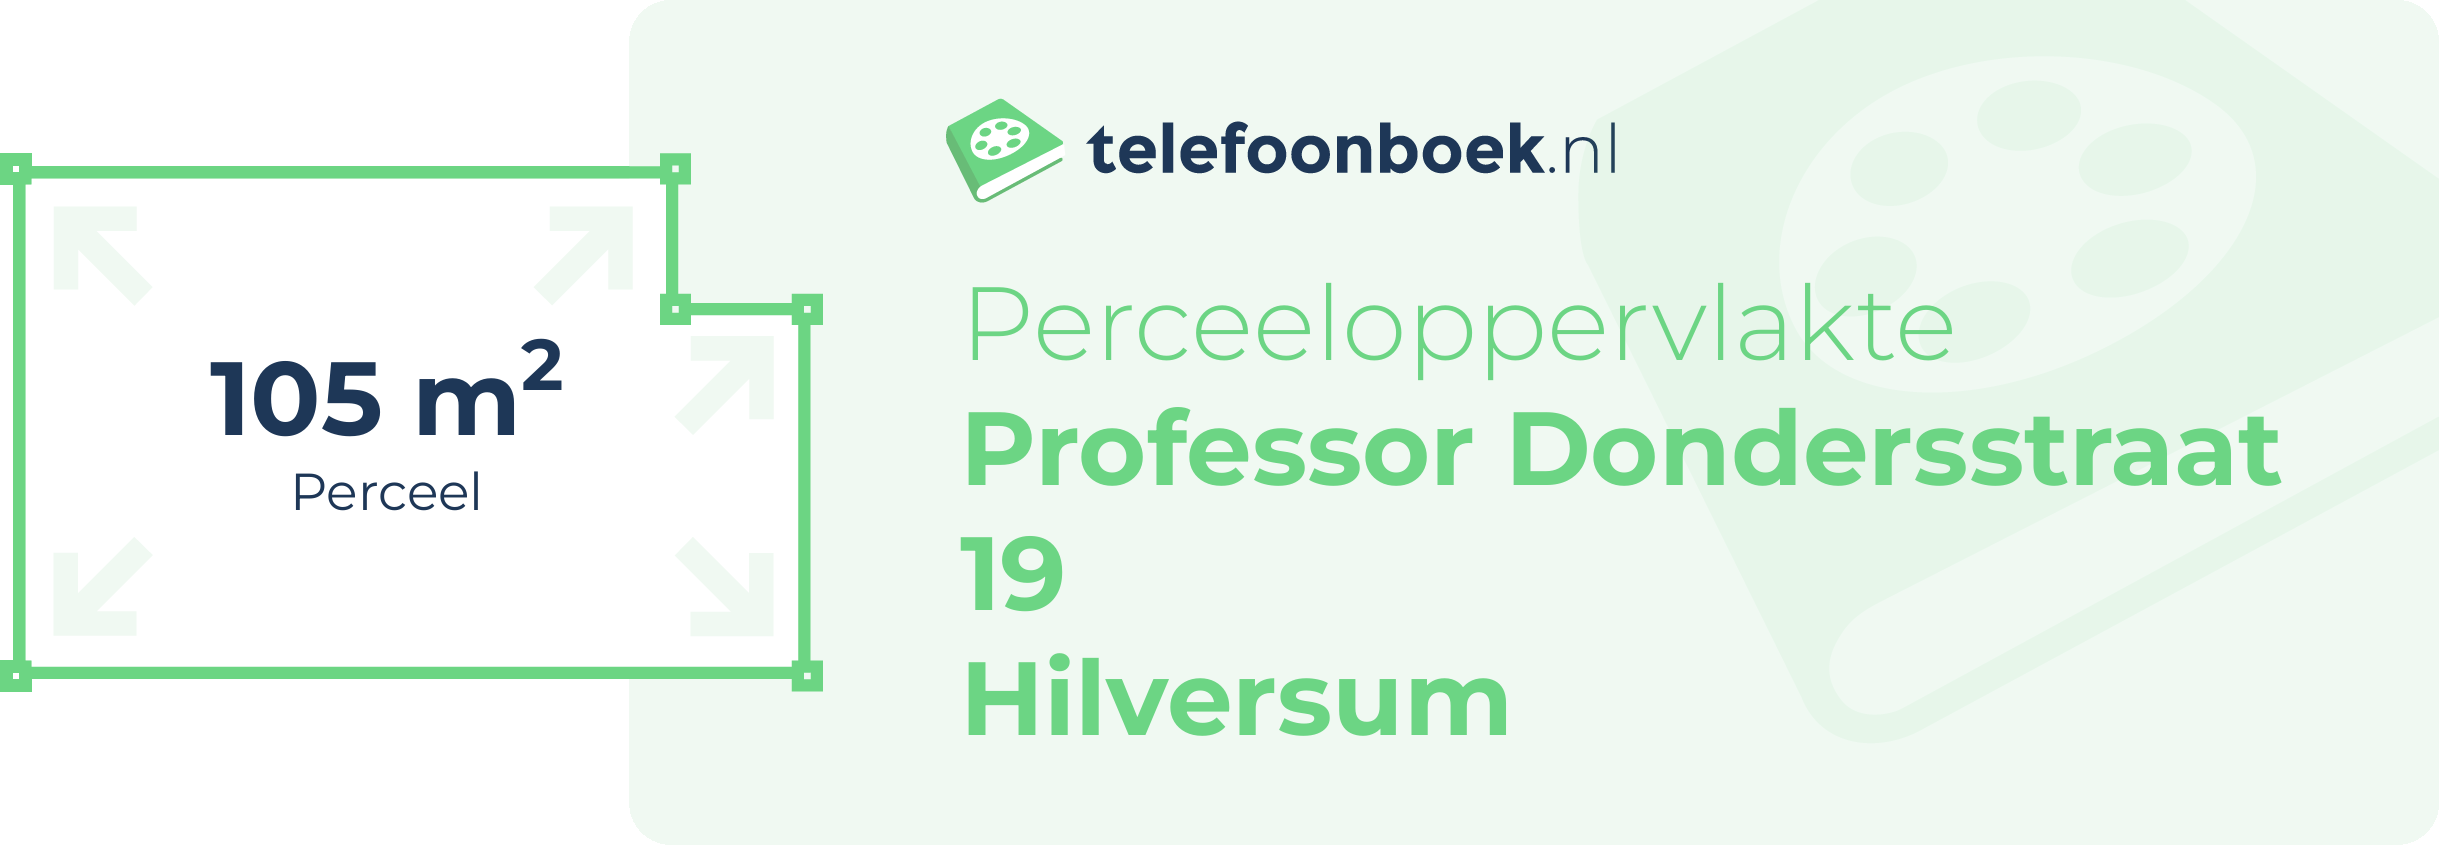 Perceeloppervlakte Professor Dondersstraat 19 Hilversum